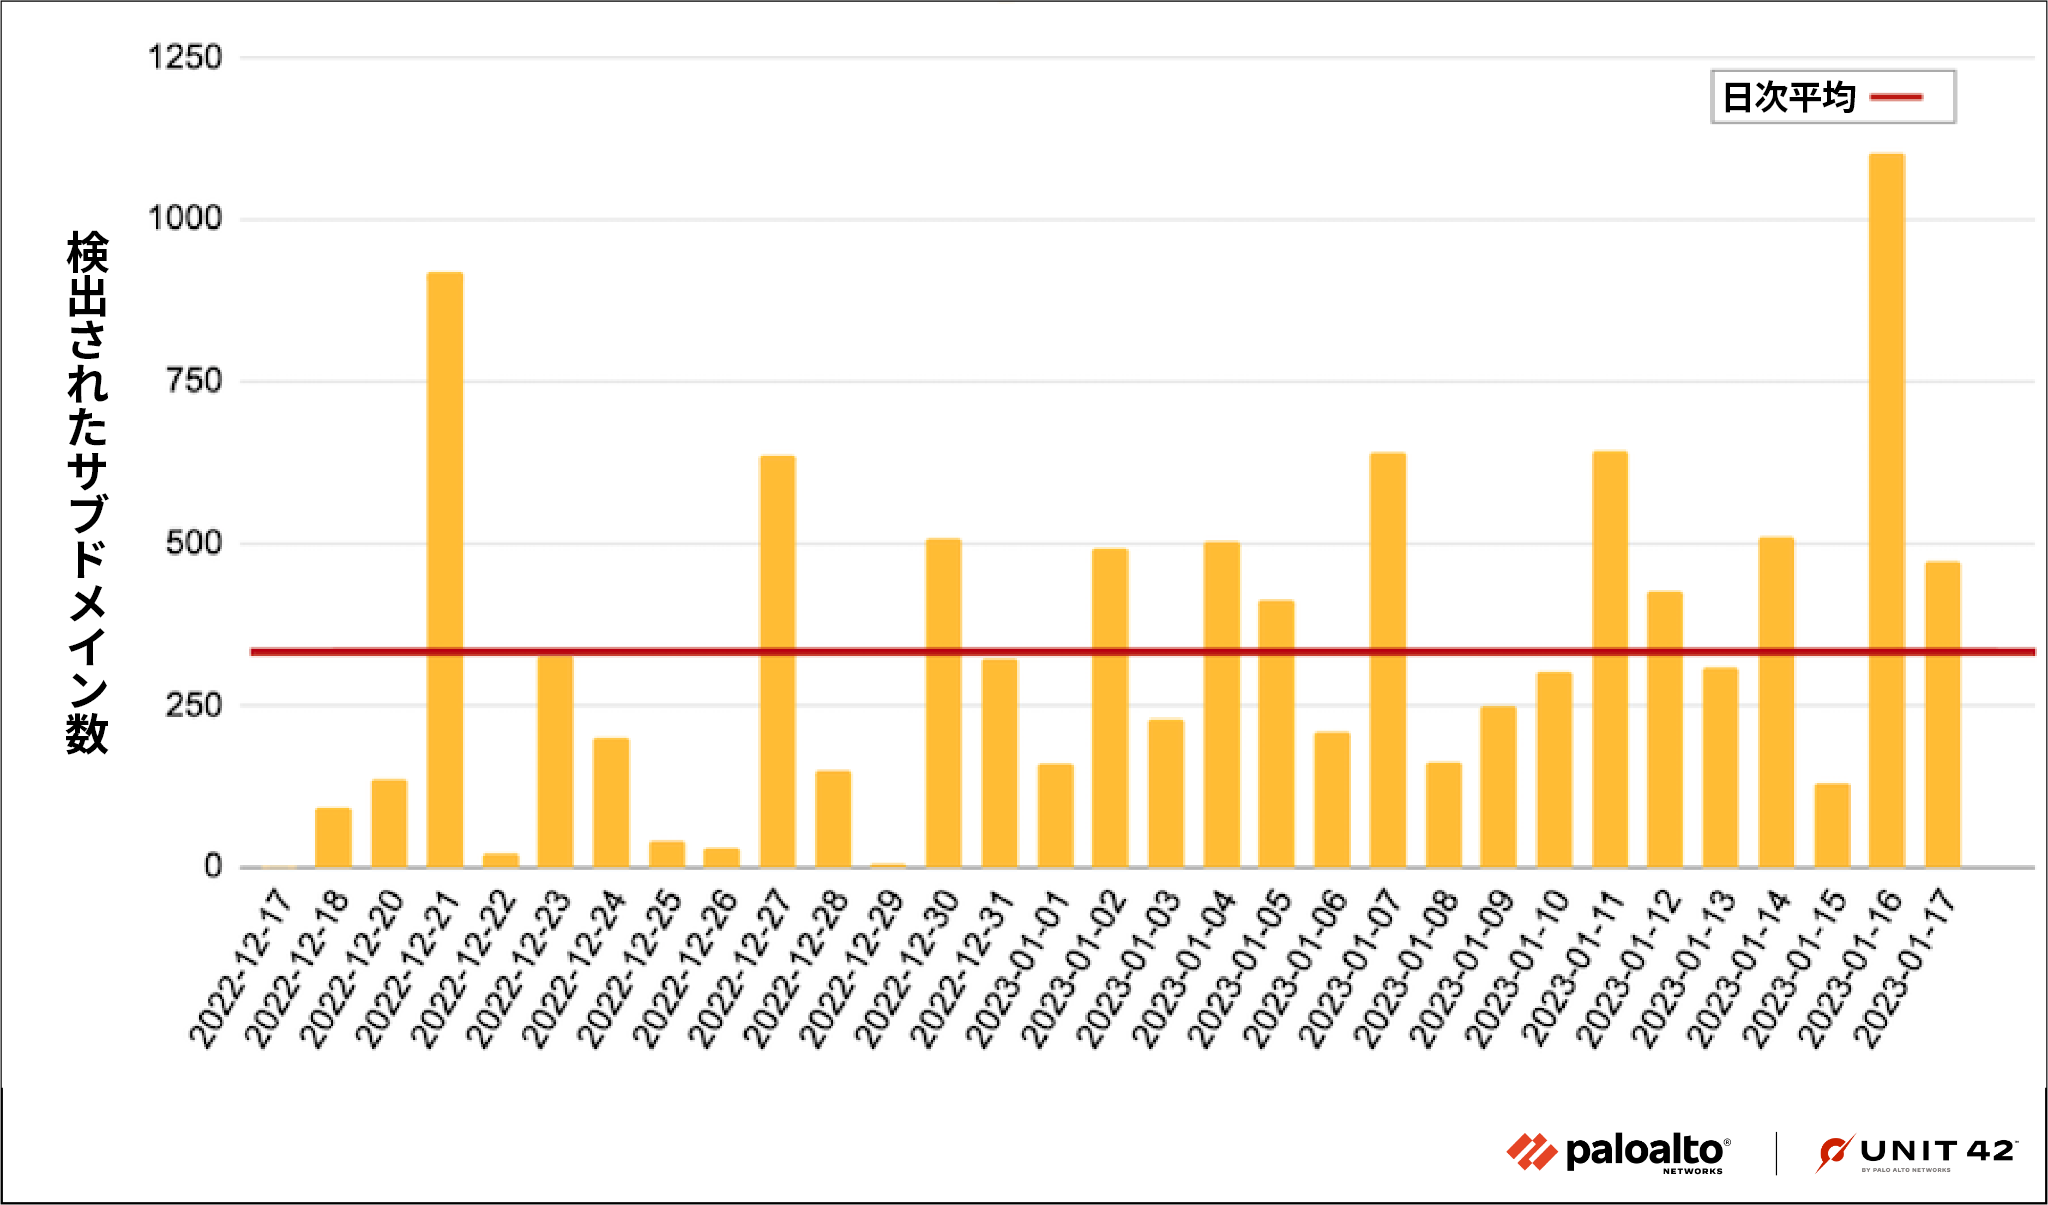 画像2は2022年12月中旬から2023年1月中旬までの棒グラフです。この棒グラフは、新たに検出されたサブドメインの日次平均が300を超えているようすを表しています。12月下旬と1月上旬に2つピークがあります。